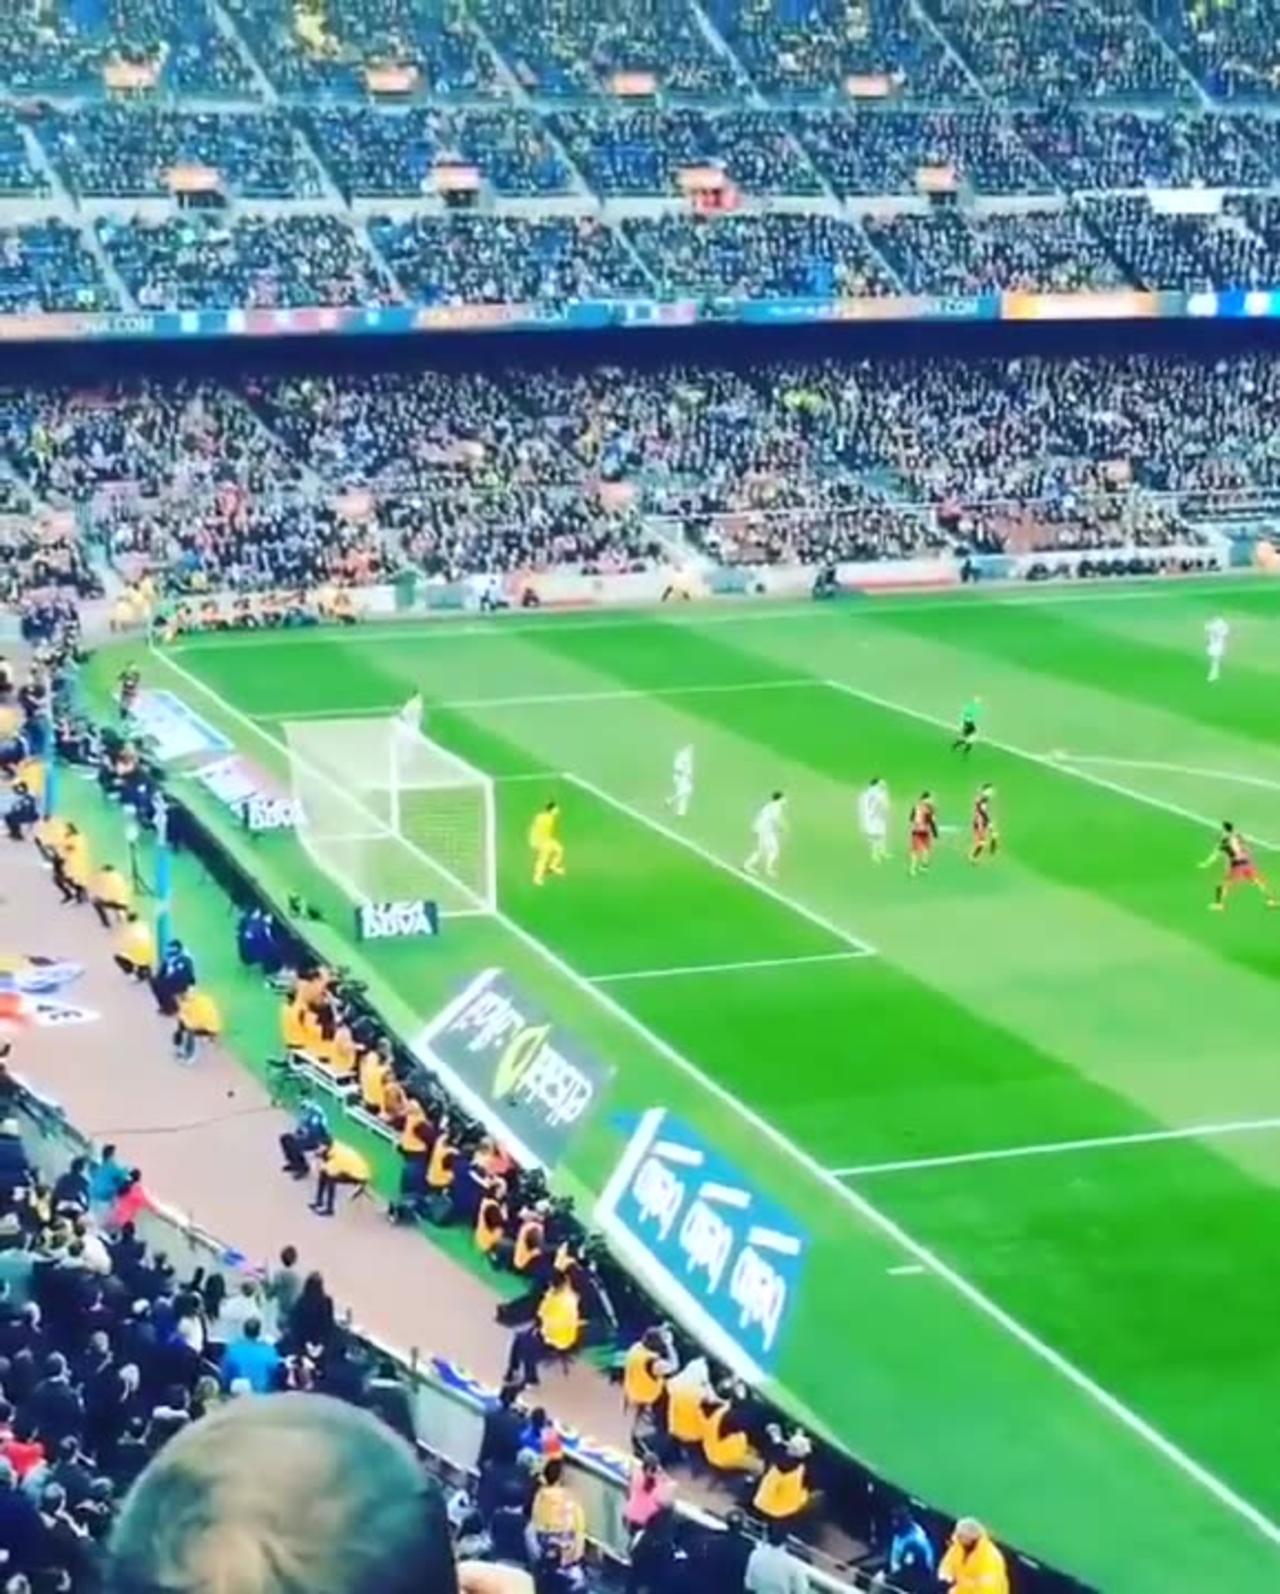 Luis Suarez goal vs Real Sociedad 28.11.2015